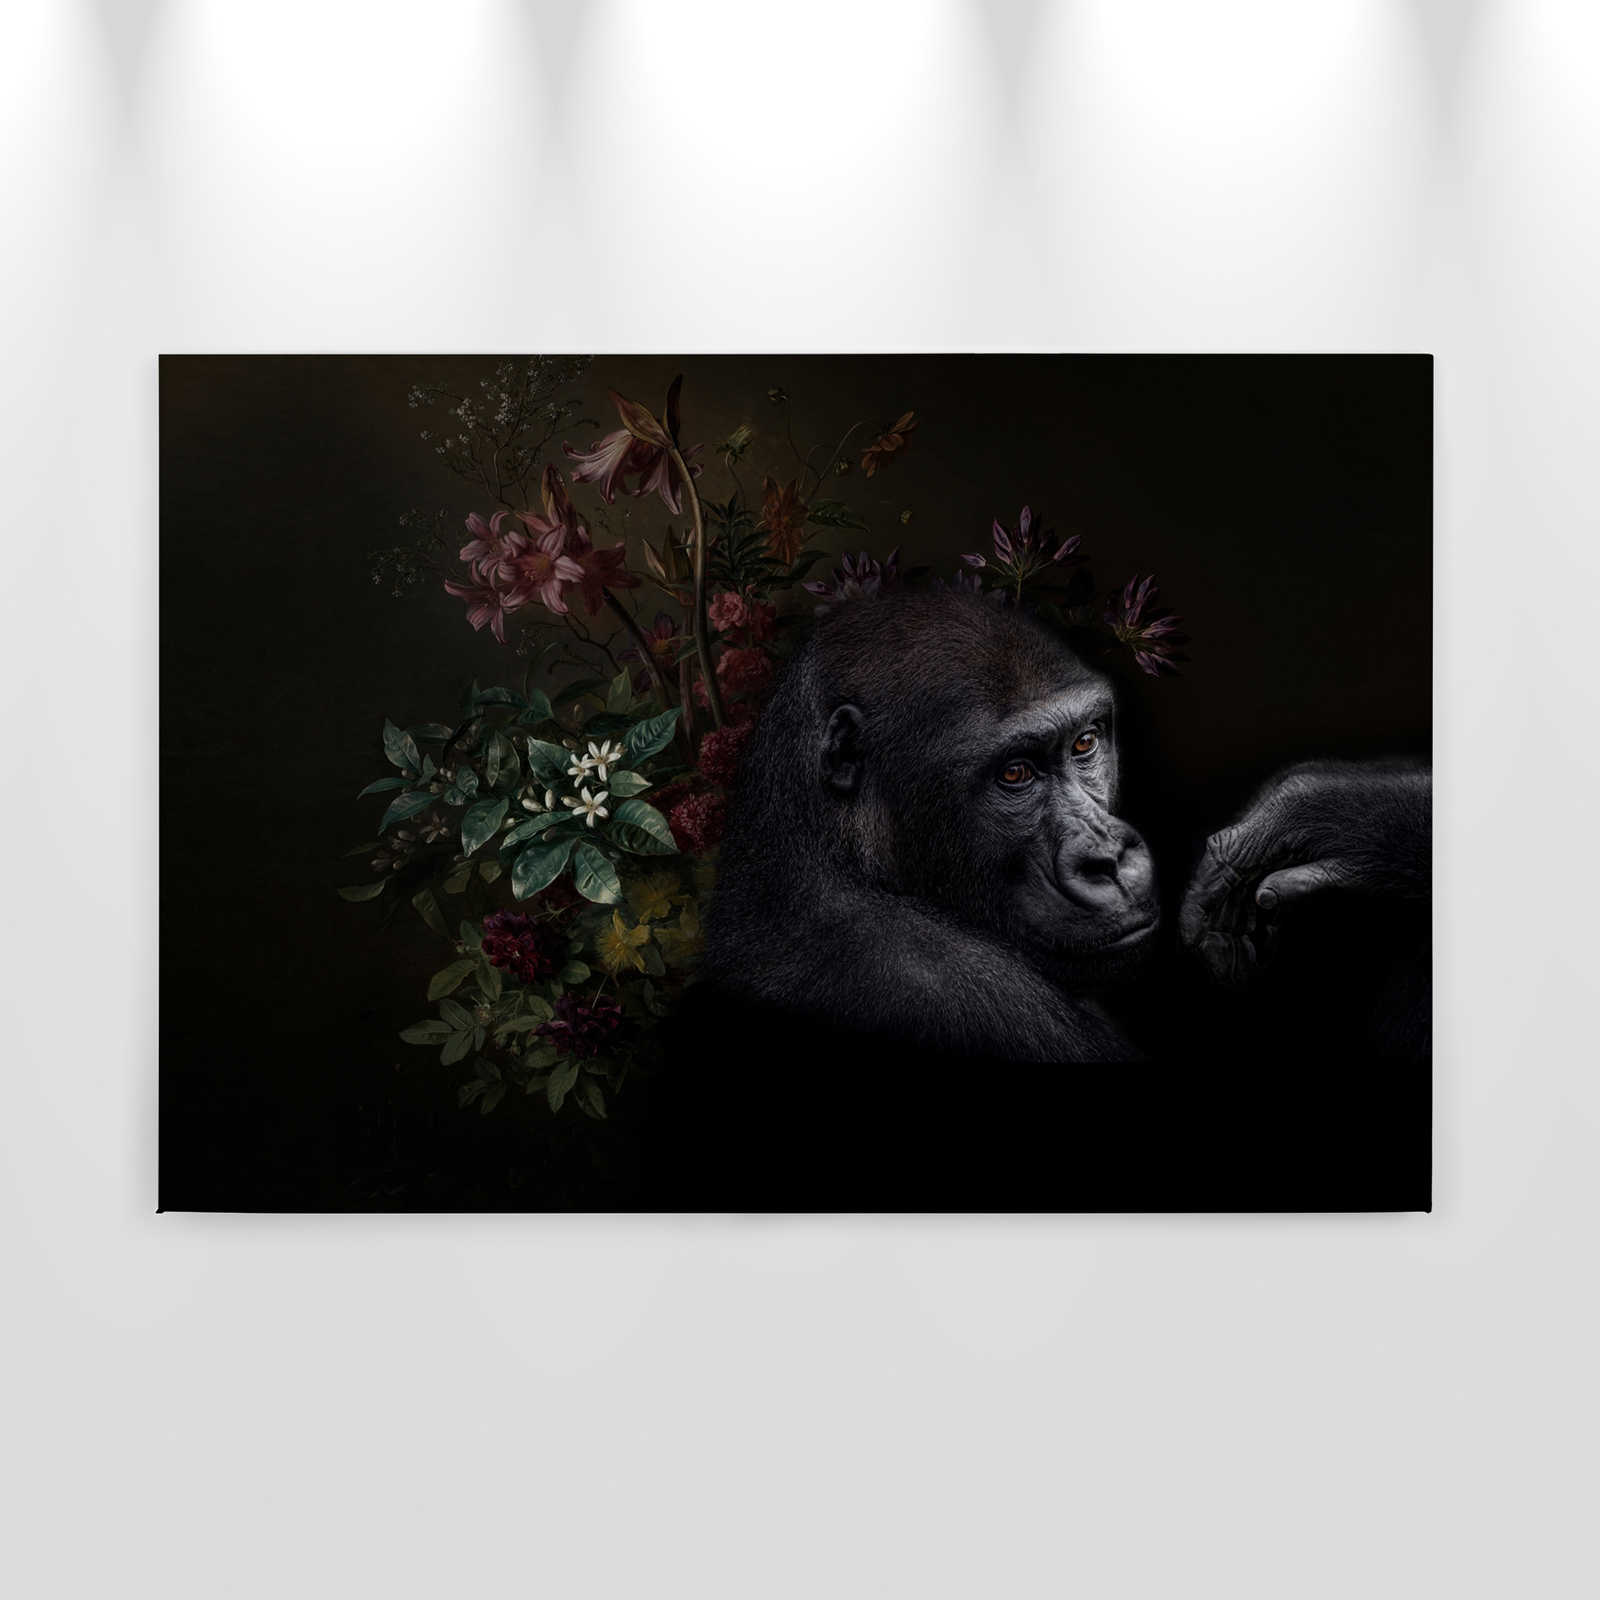             Canvas painting Gorilla Portrait with flowers - 0,90 m x 0,60 m
        